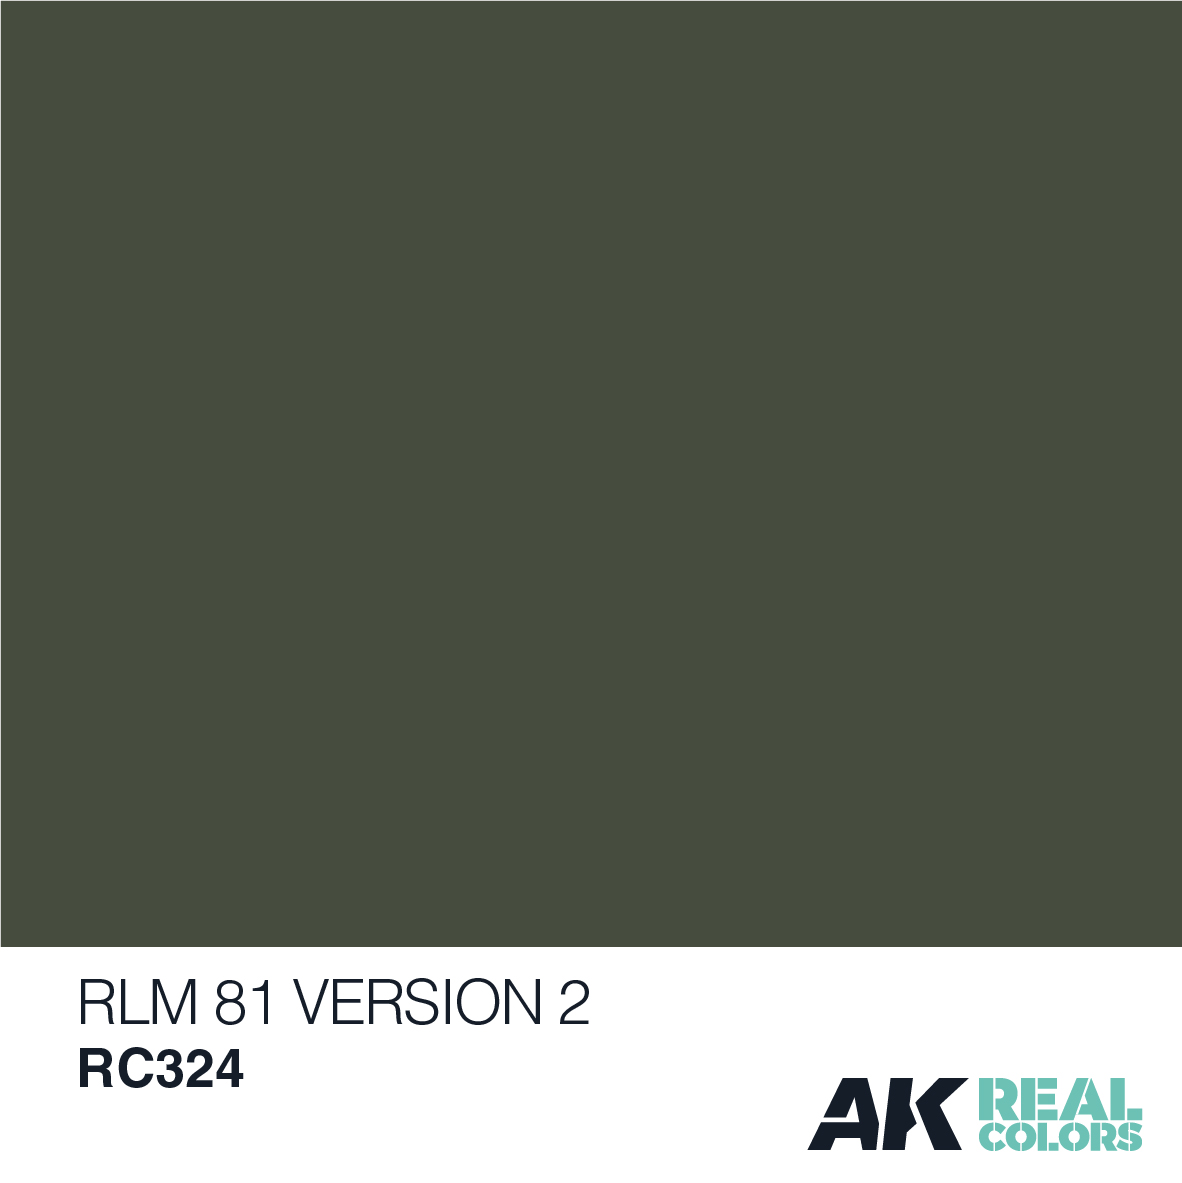 RLM 81 Version 2